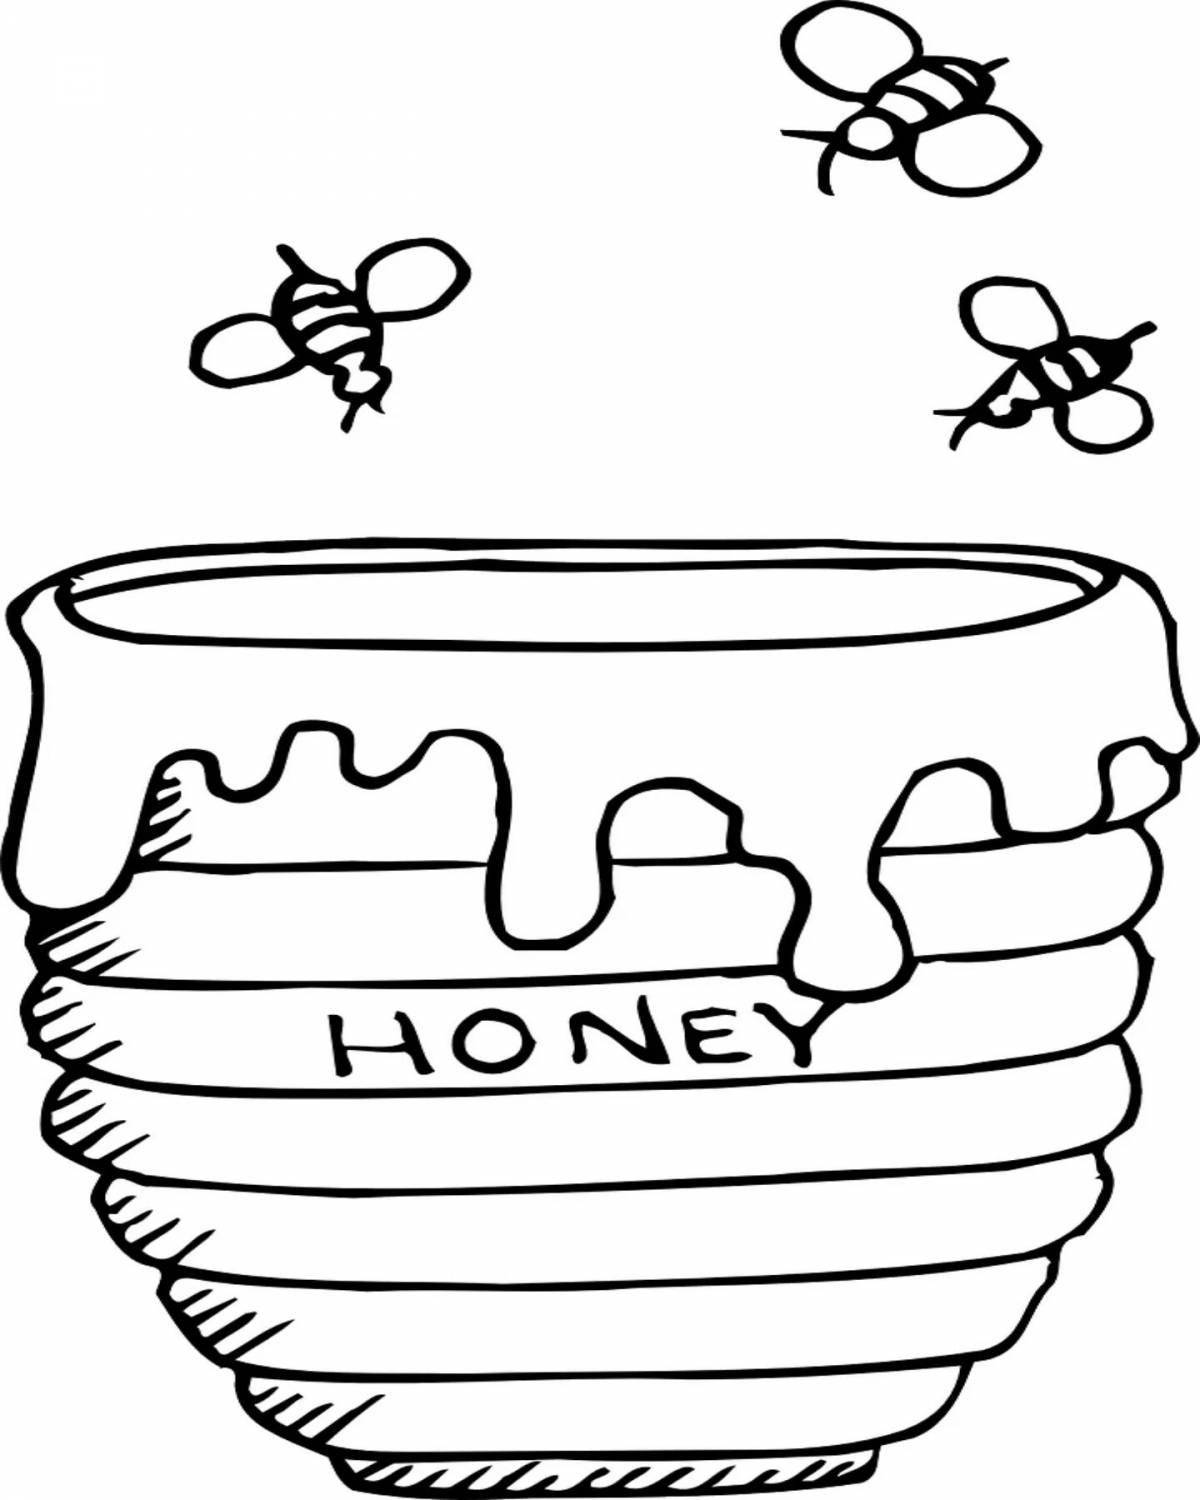 Бочка меда. нарисованный вручную акварельный векторный рисунок.